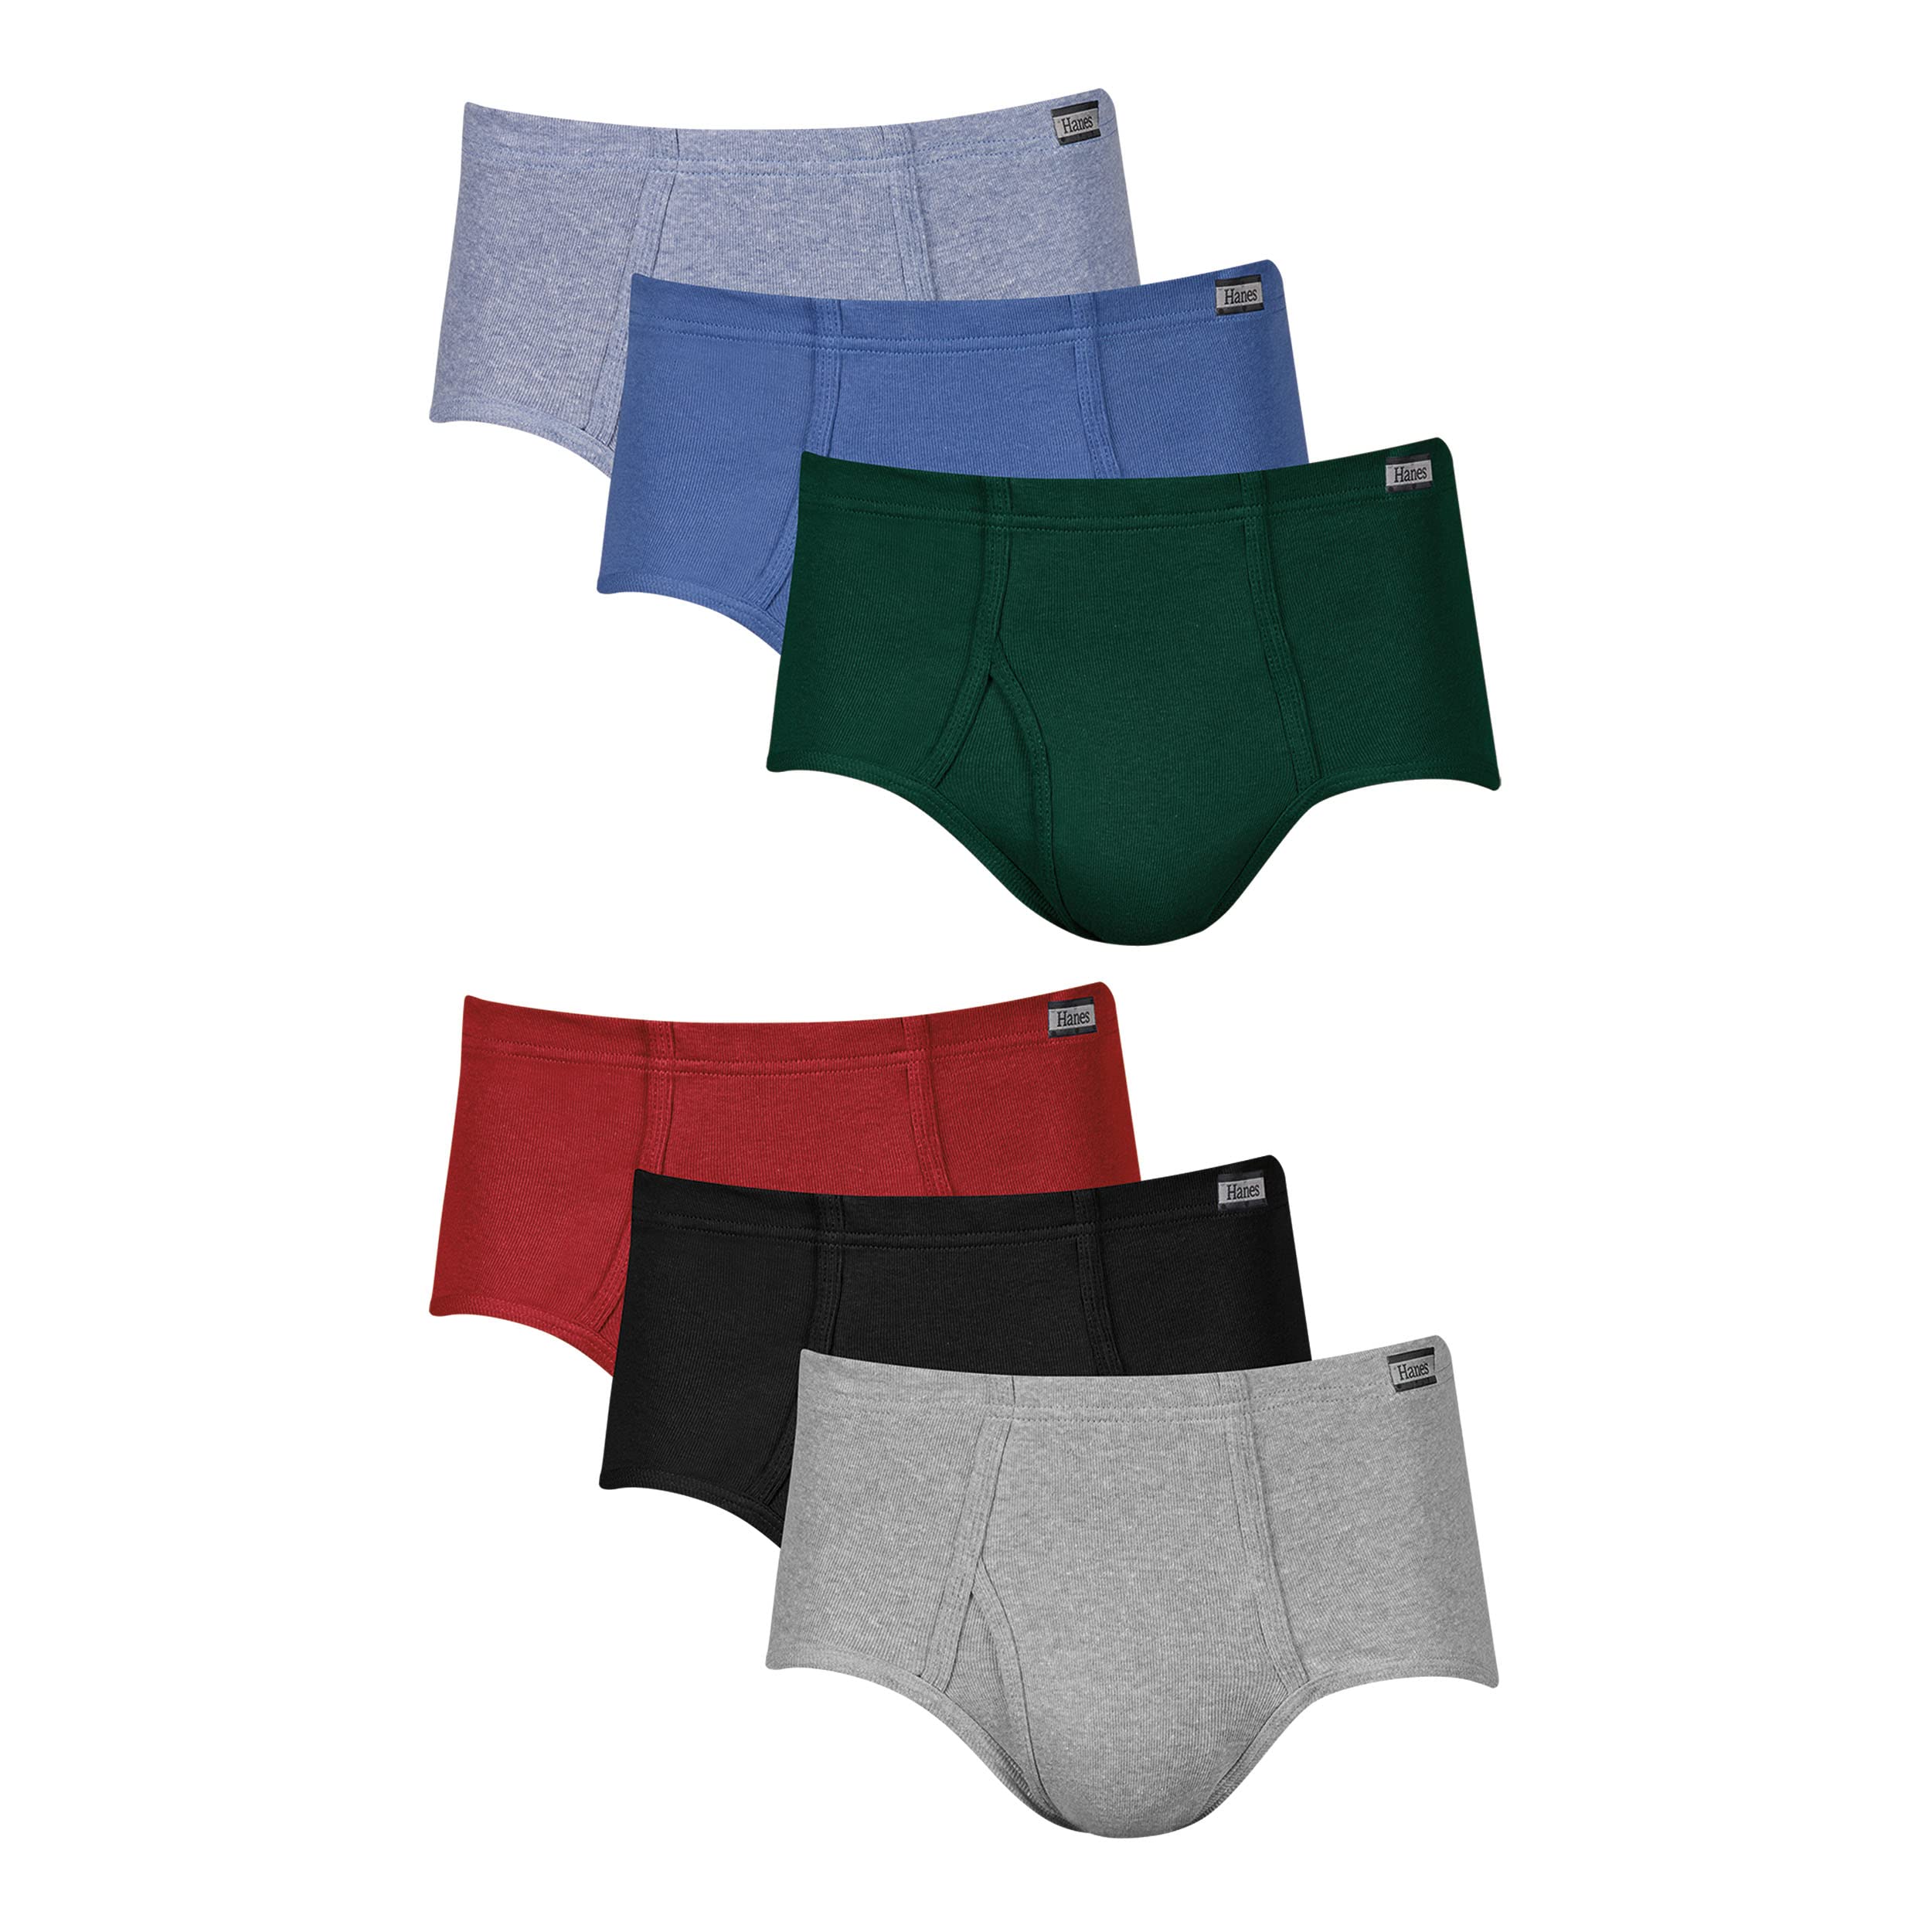 Hanes Men's Underwear Briefs, Mid-Rise, Moisture-Wicking, 6-Pack